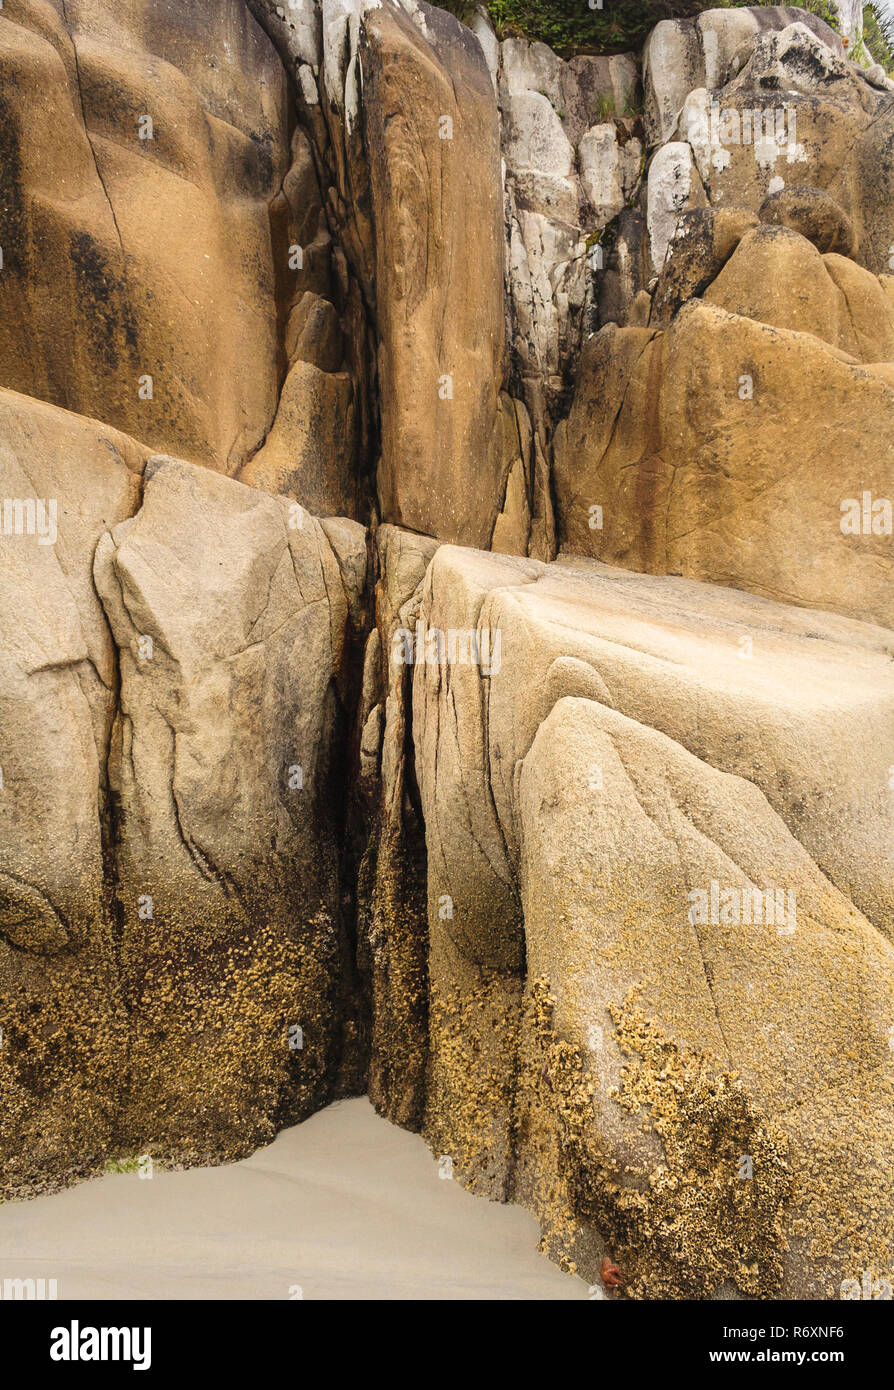 Résumé d'un gros plan de granit érodés bluff au bord d'une plage de sable fin, avec contraste dur, douce, lisse et rugueux de textures (Colombie-Britannique). Banque D'Images